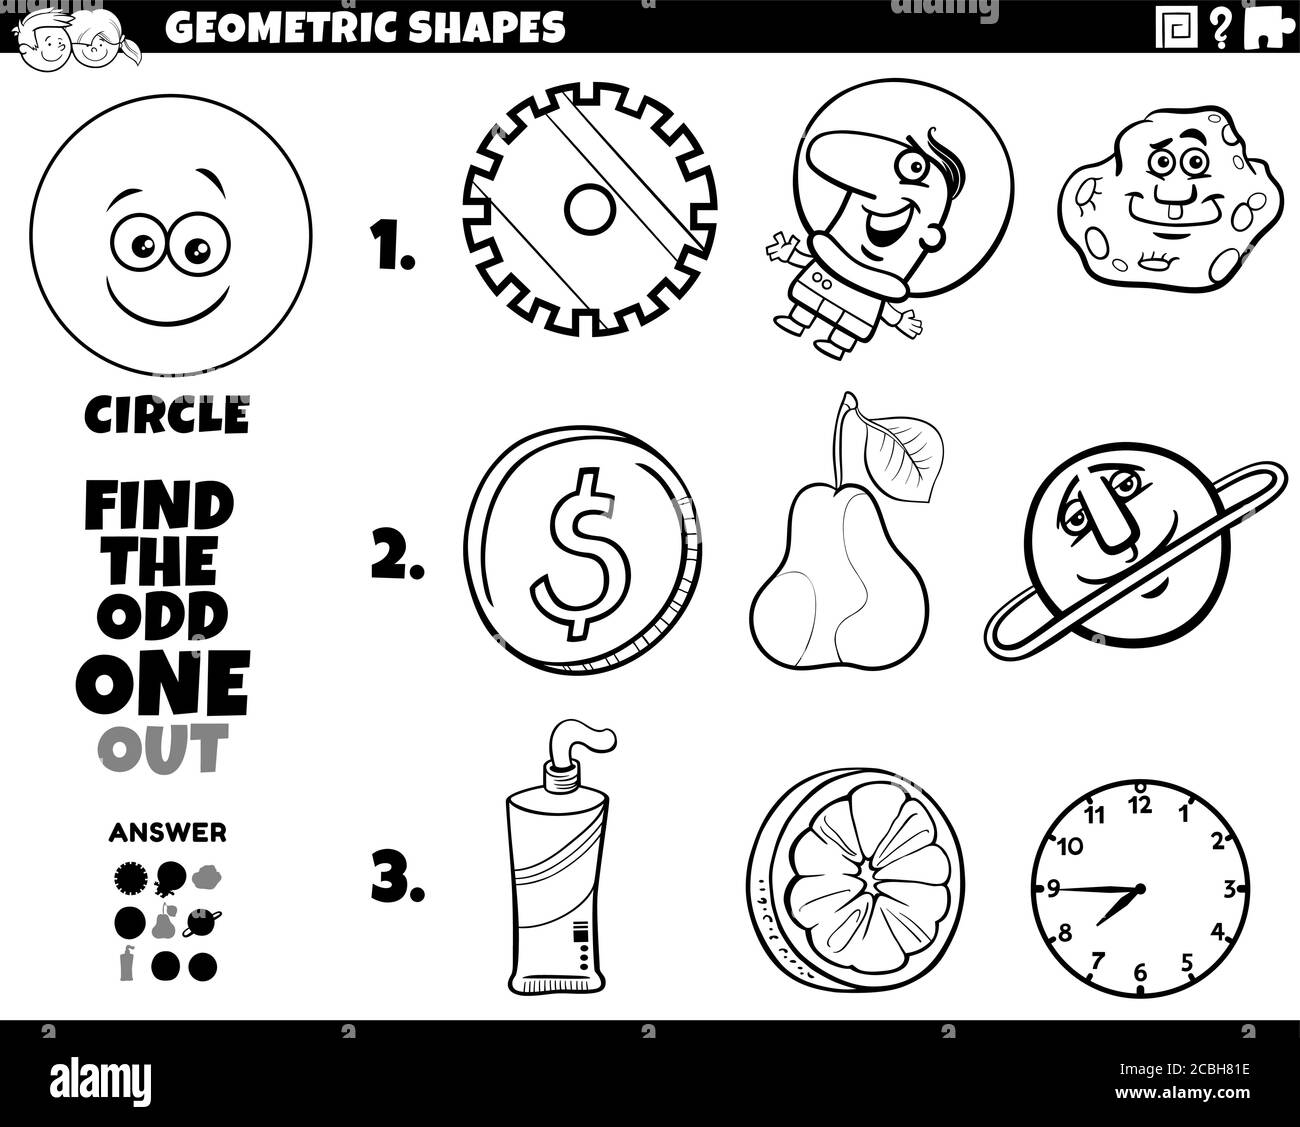 Schwarz und Weiß Cartoon Illustration von Kreis geometrische Form Educational Odd One Out Aufgabe für Kinder Malbuch Seite Stock Vektor